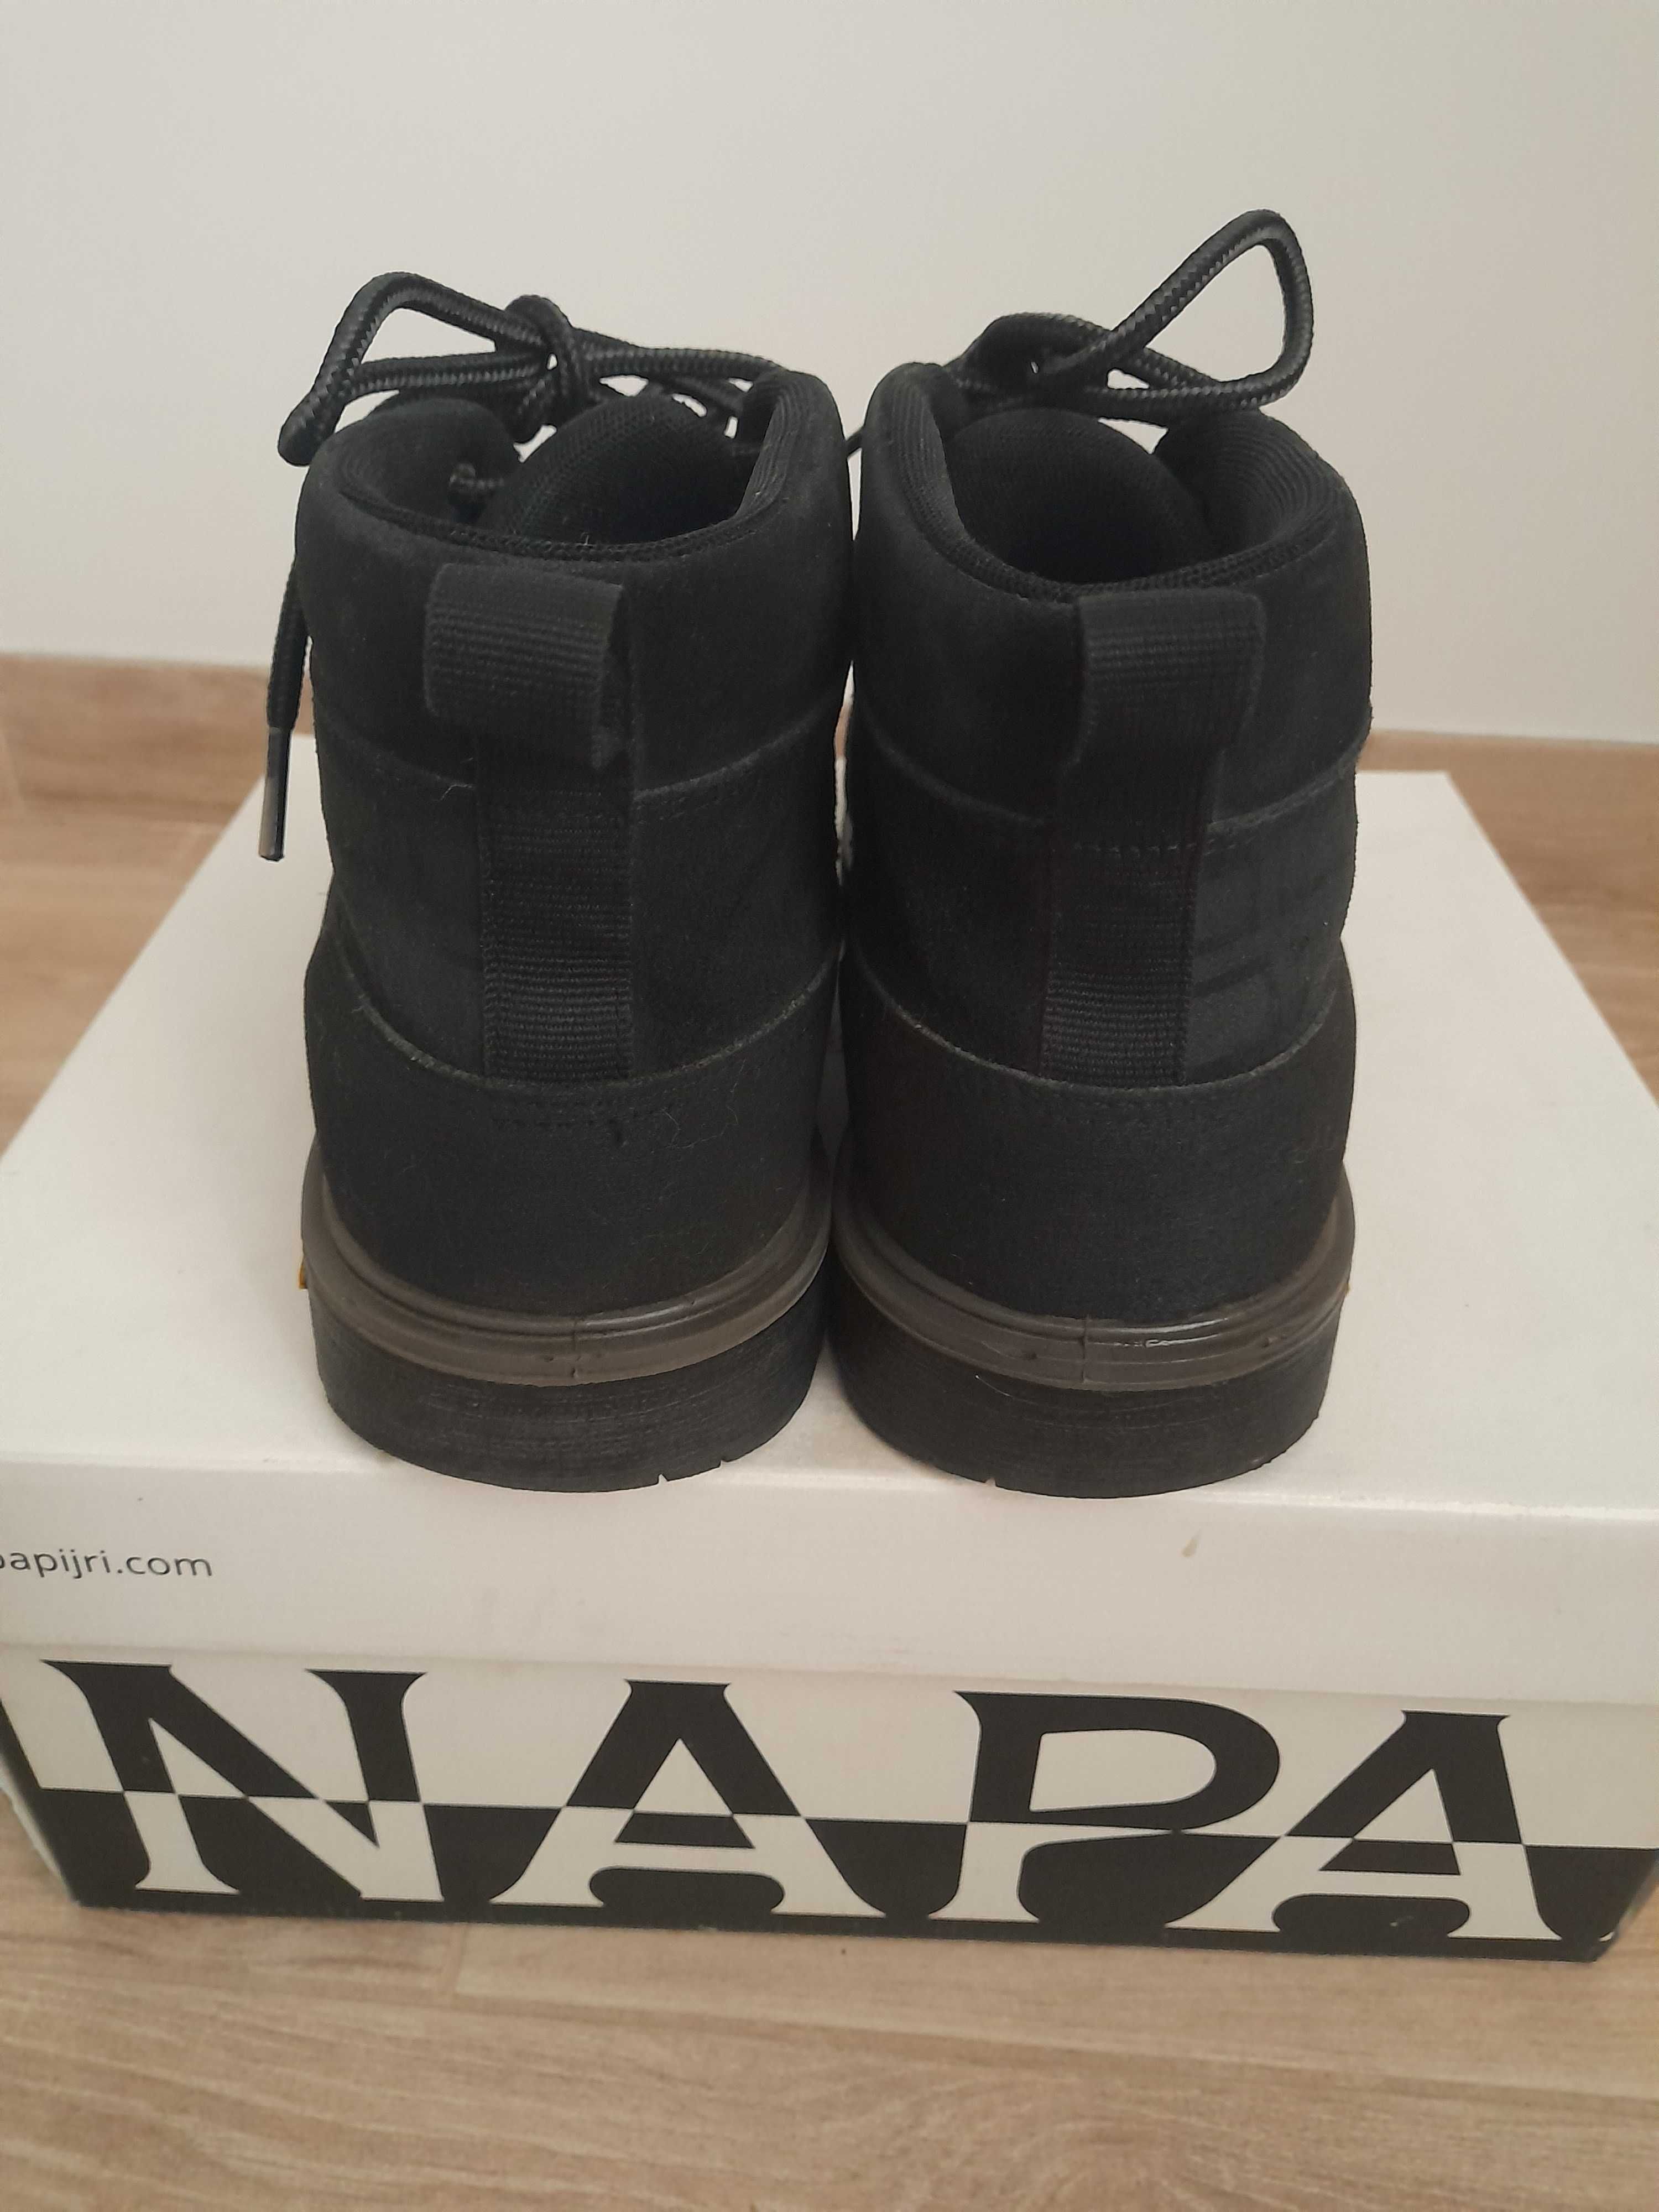 Продам зимові черевики чоловічі Napapijri, 42р. Оригінал